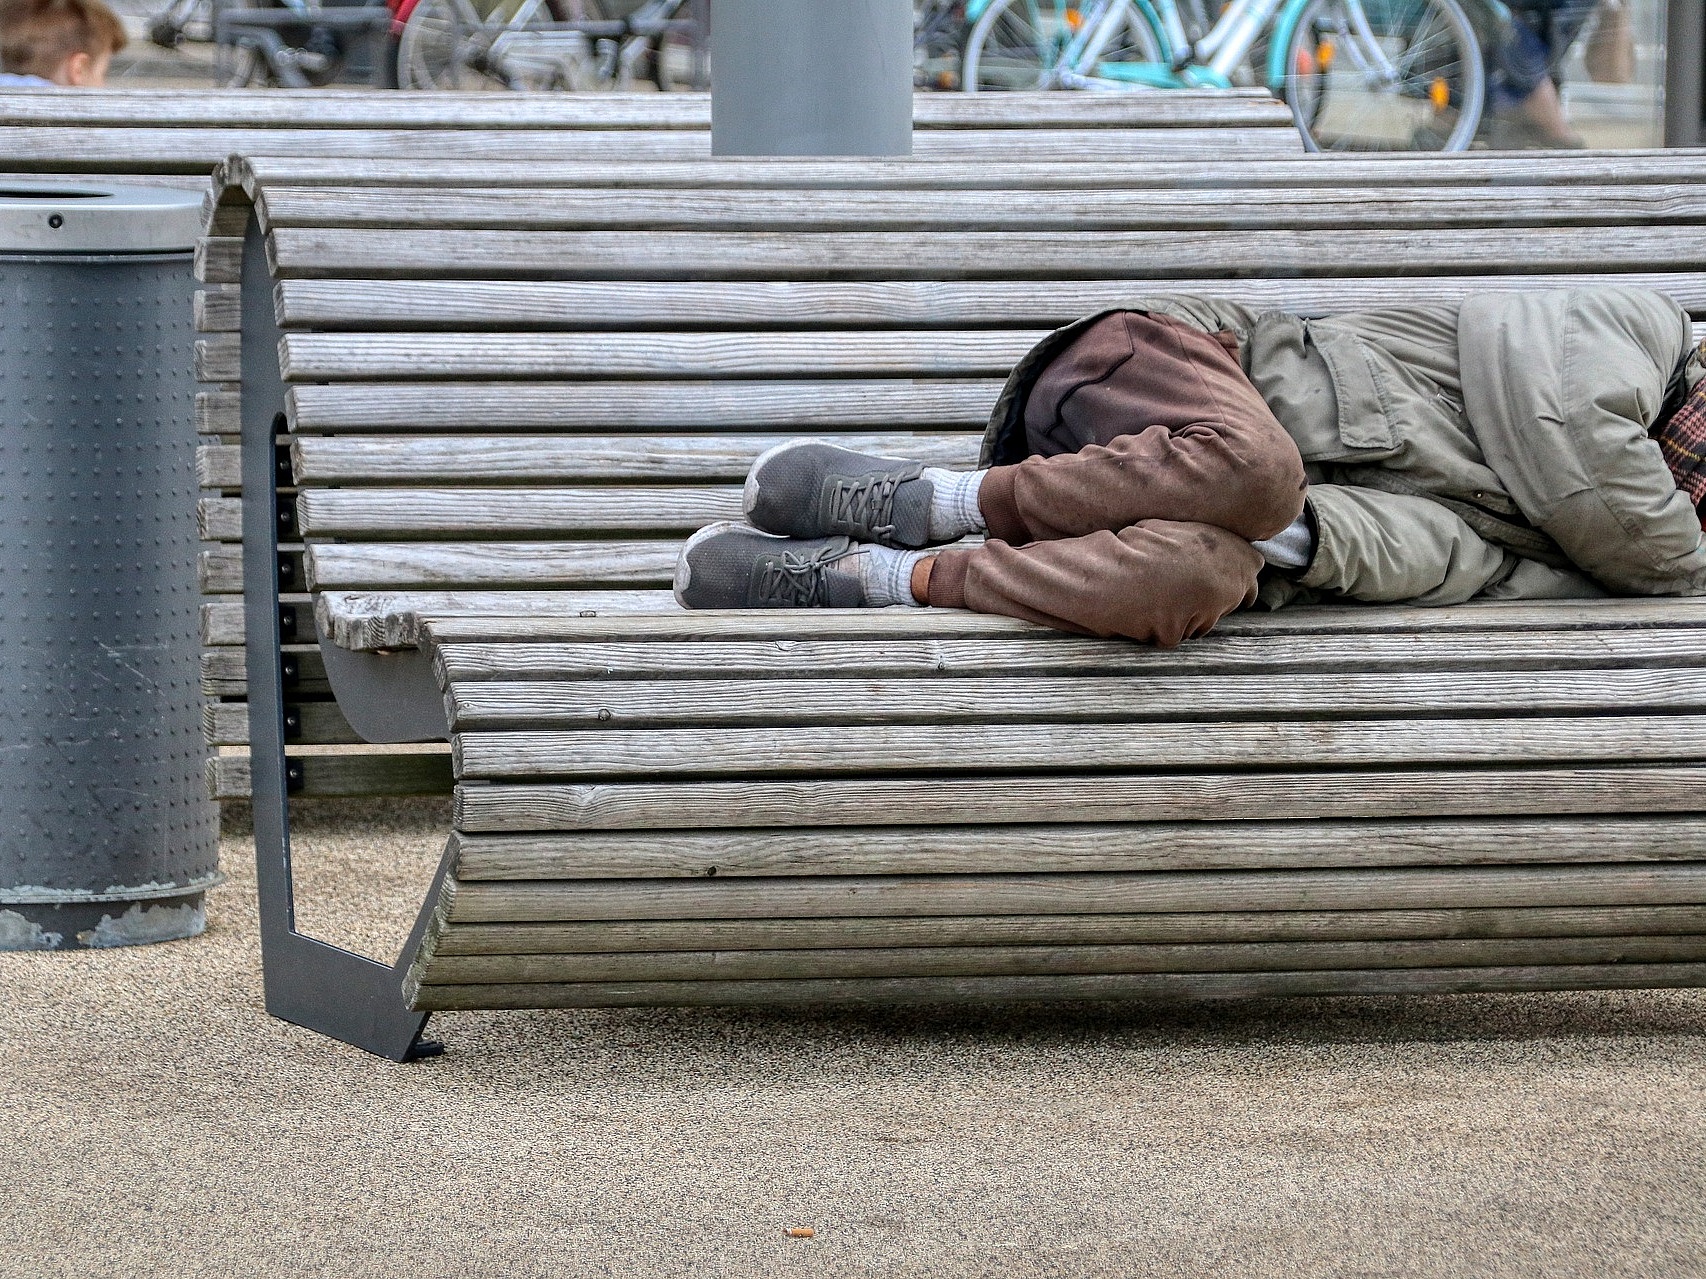 Foto: Ein obdachloser Mensch schläft auf einer Parkbank